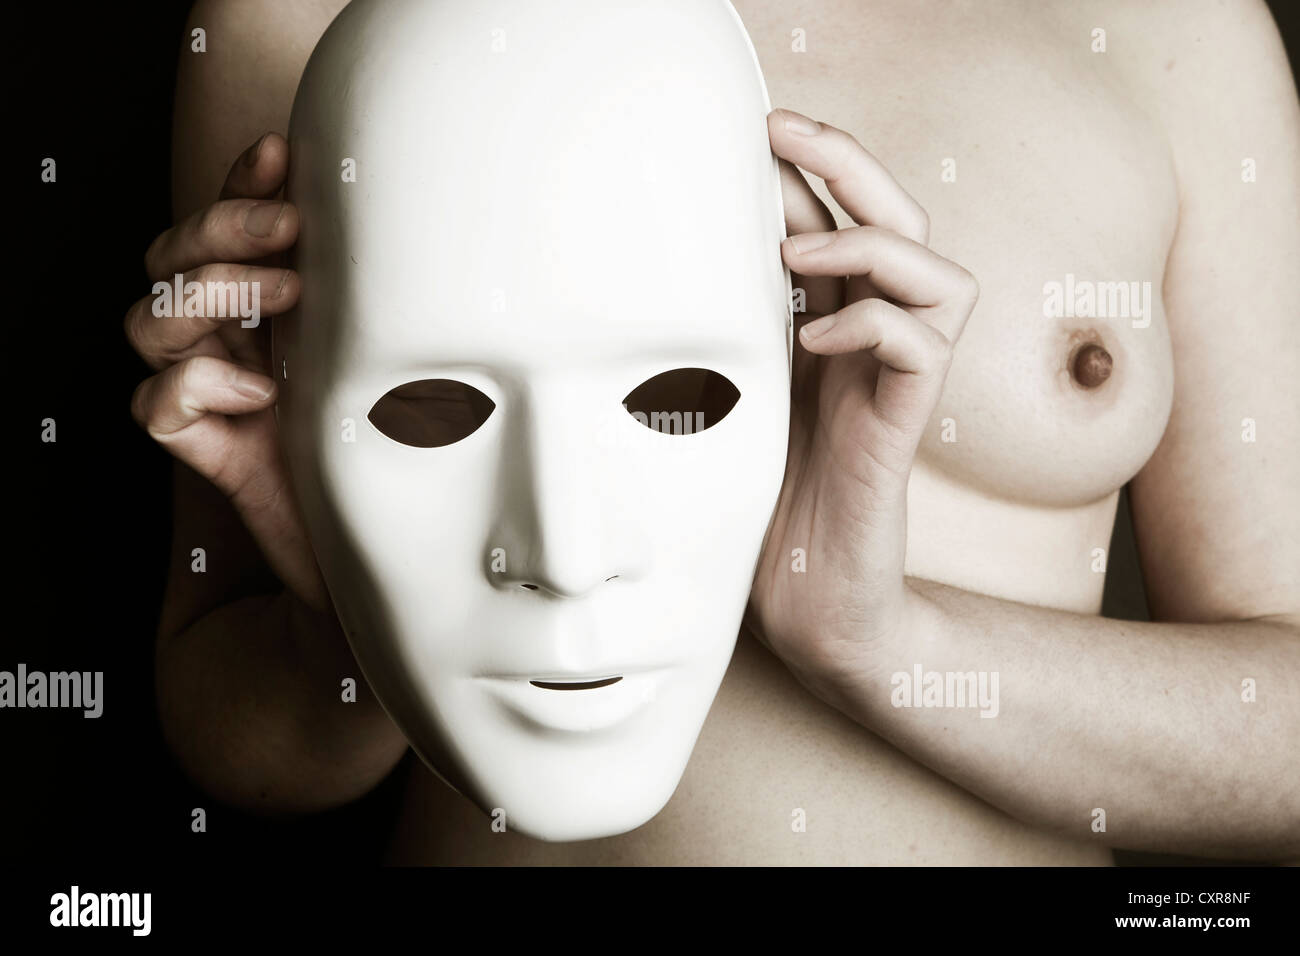 Donna nuda, maschera di contenimento nella parte anteriore del petto Foto  stock - Alamy